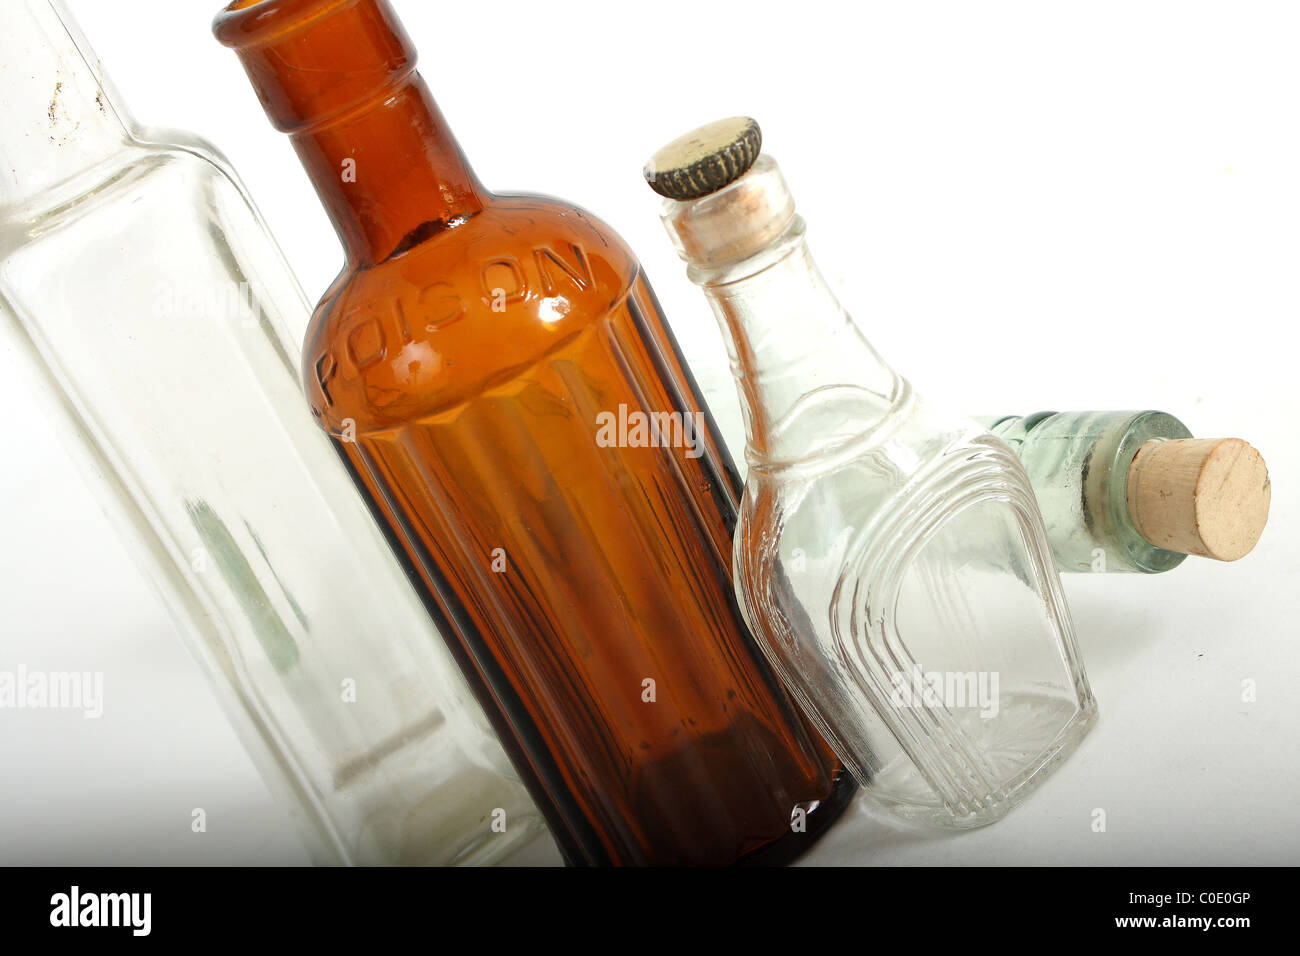 Eine Sammlung von alten Pharmaglas Flaschen inklusive einer authentischen vergiften Flasche von einem Apotheker Apotheke. Stockfoto